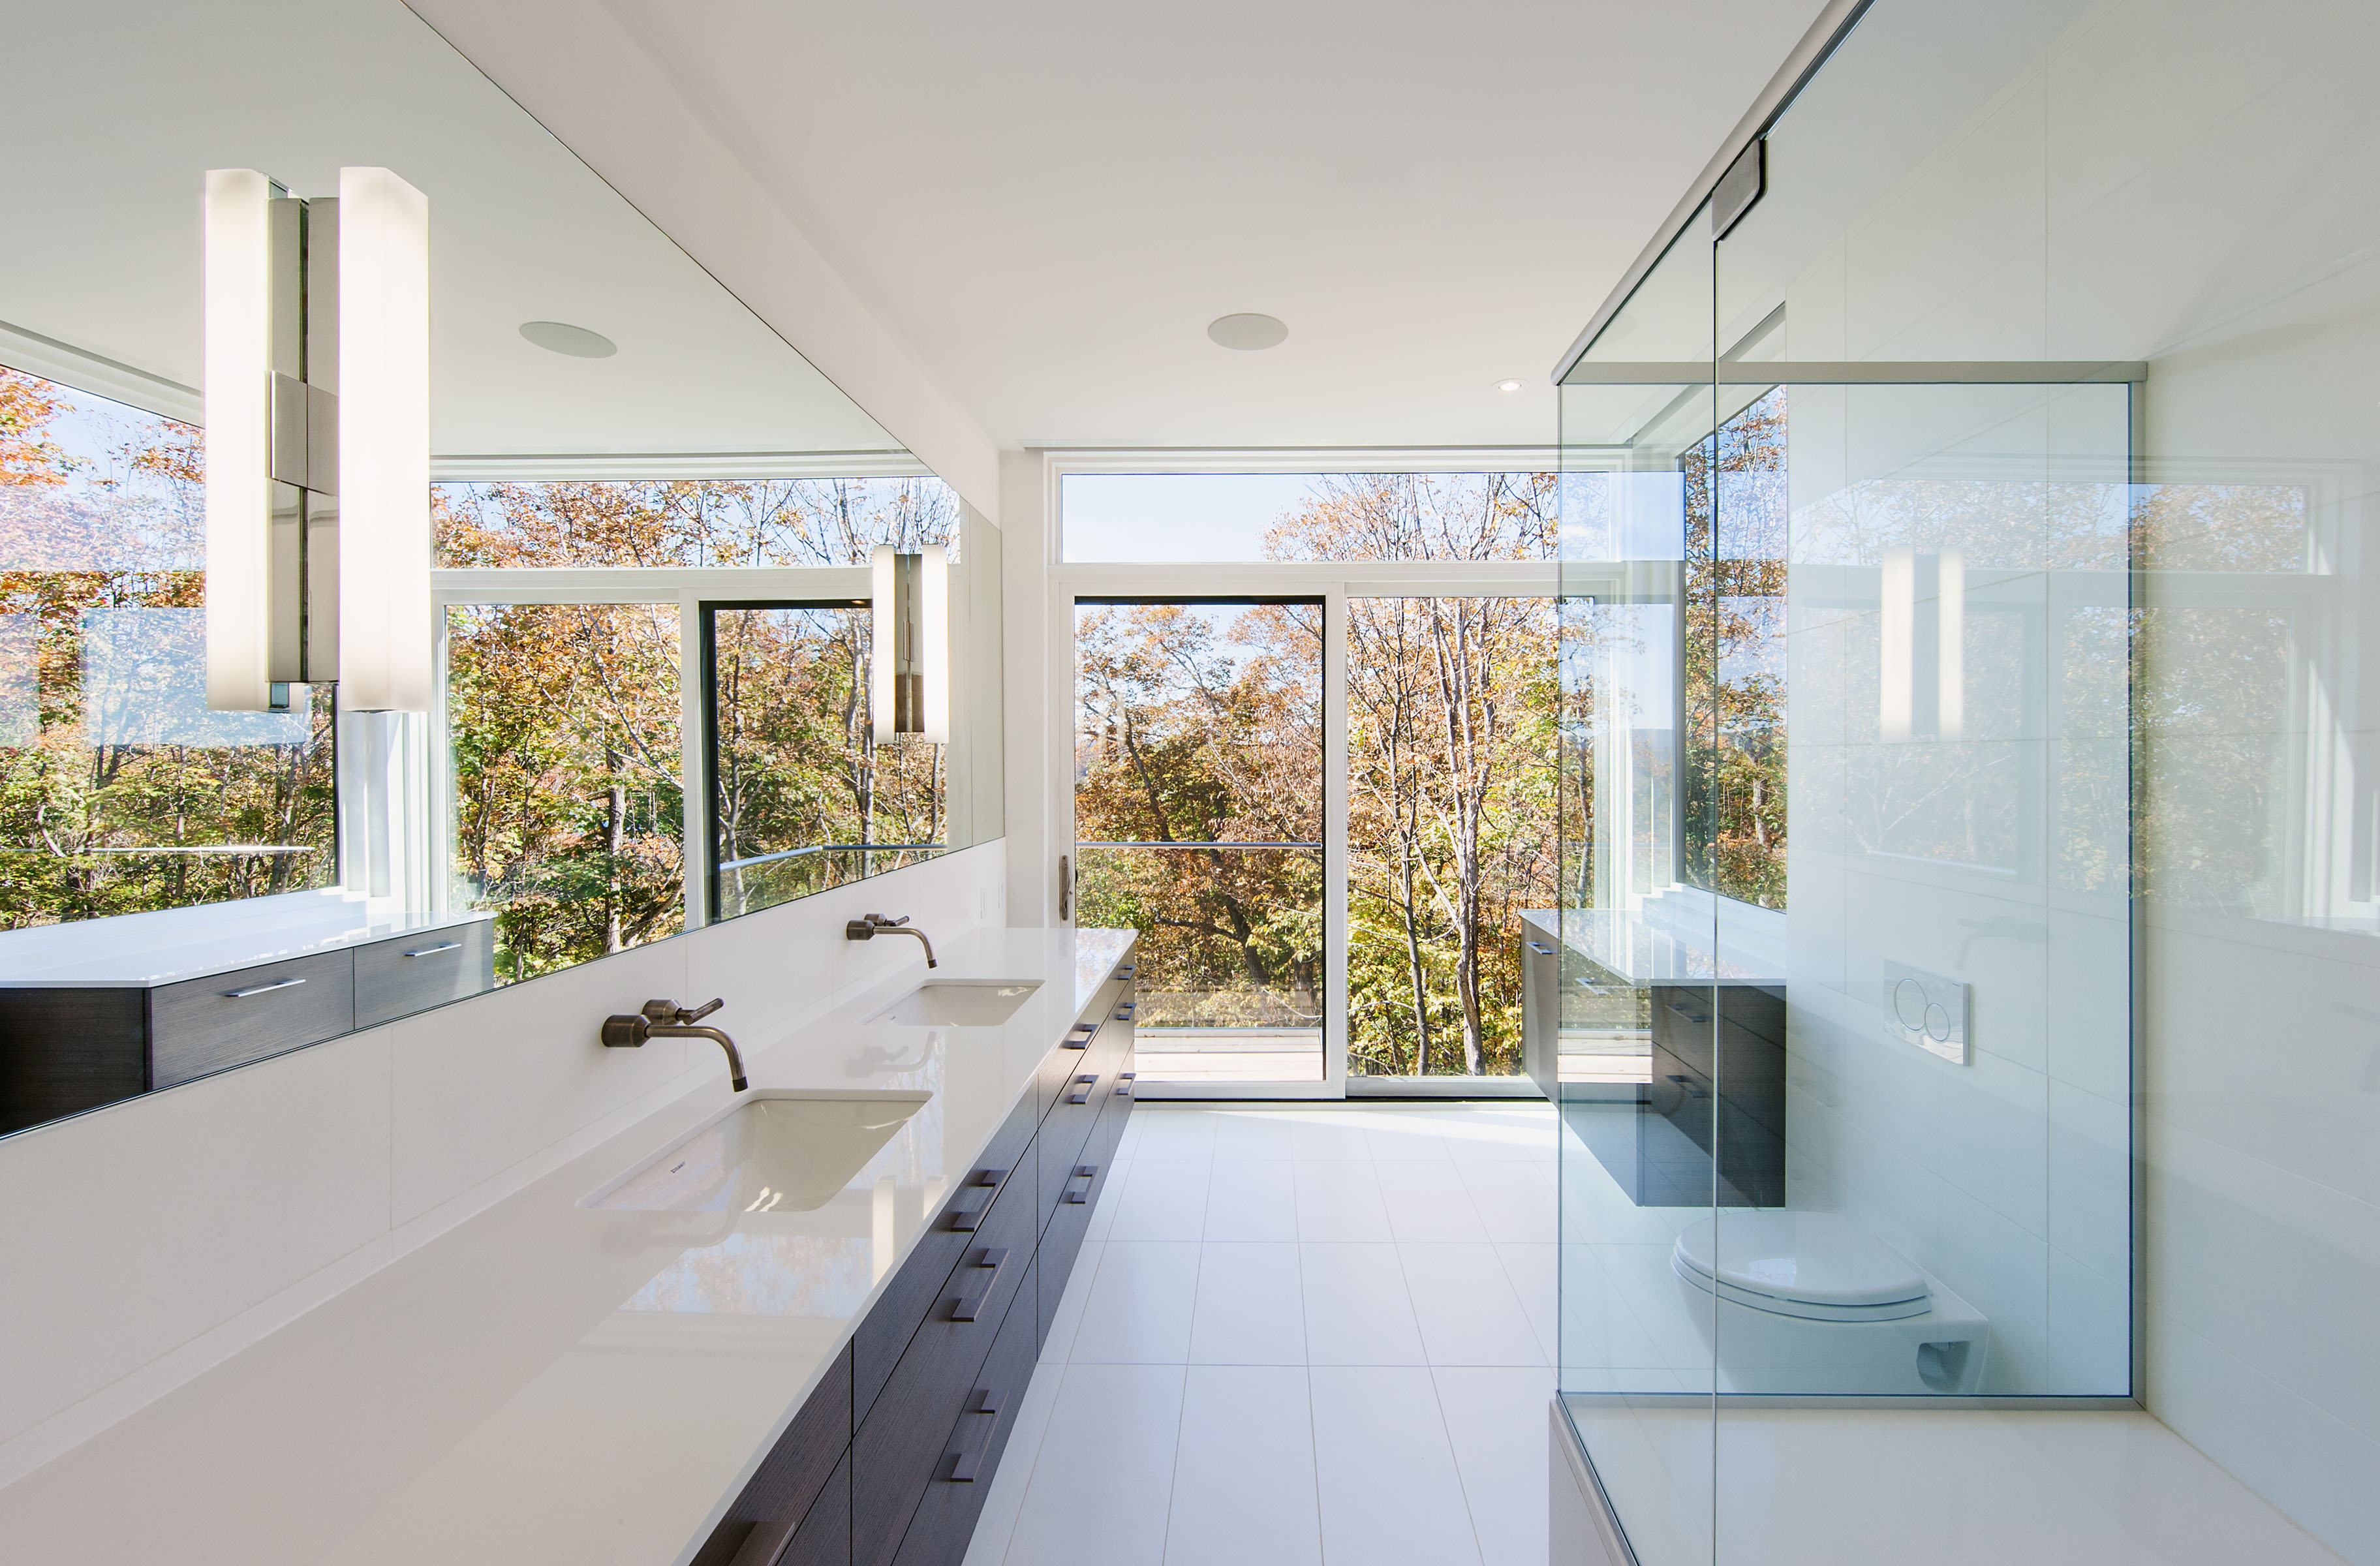 Ванна с большим окном. Современная ванная комната с окном. Окно в ванной комнате в частном доме. Ванная с панорамным окном. Ванная комната с окном в частном.